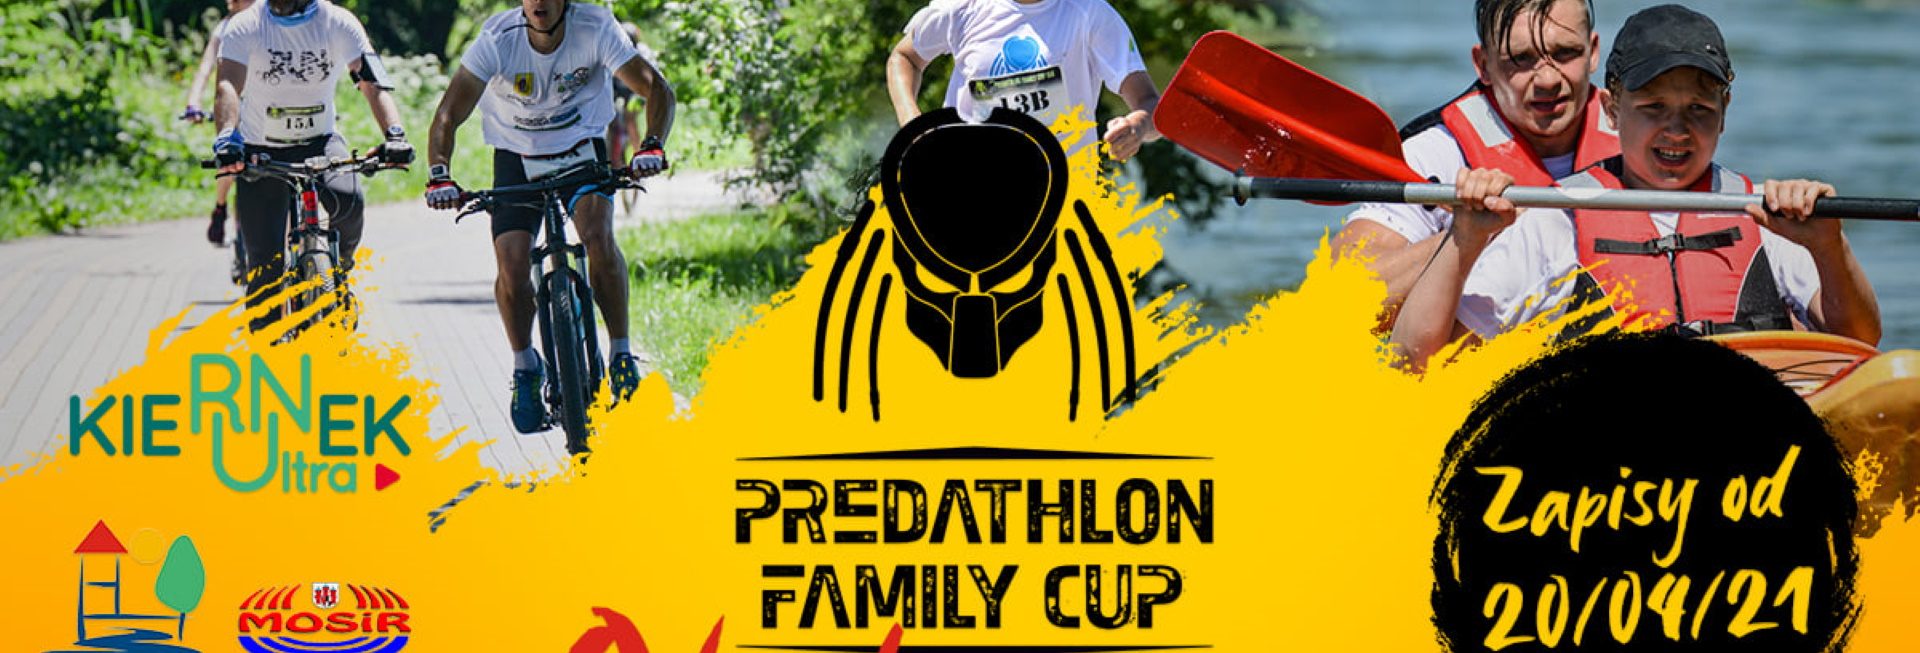 Plakat graficzny zapraszający do Olecka na 1. edycję zawodów Predathlon Family Cup - Olecko 2021. Na plakacie trzy zdjęcia rowerzystów, biegacza i kajakarzy uczestniczących w zawodach.